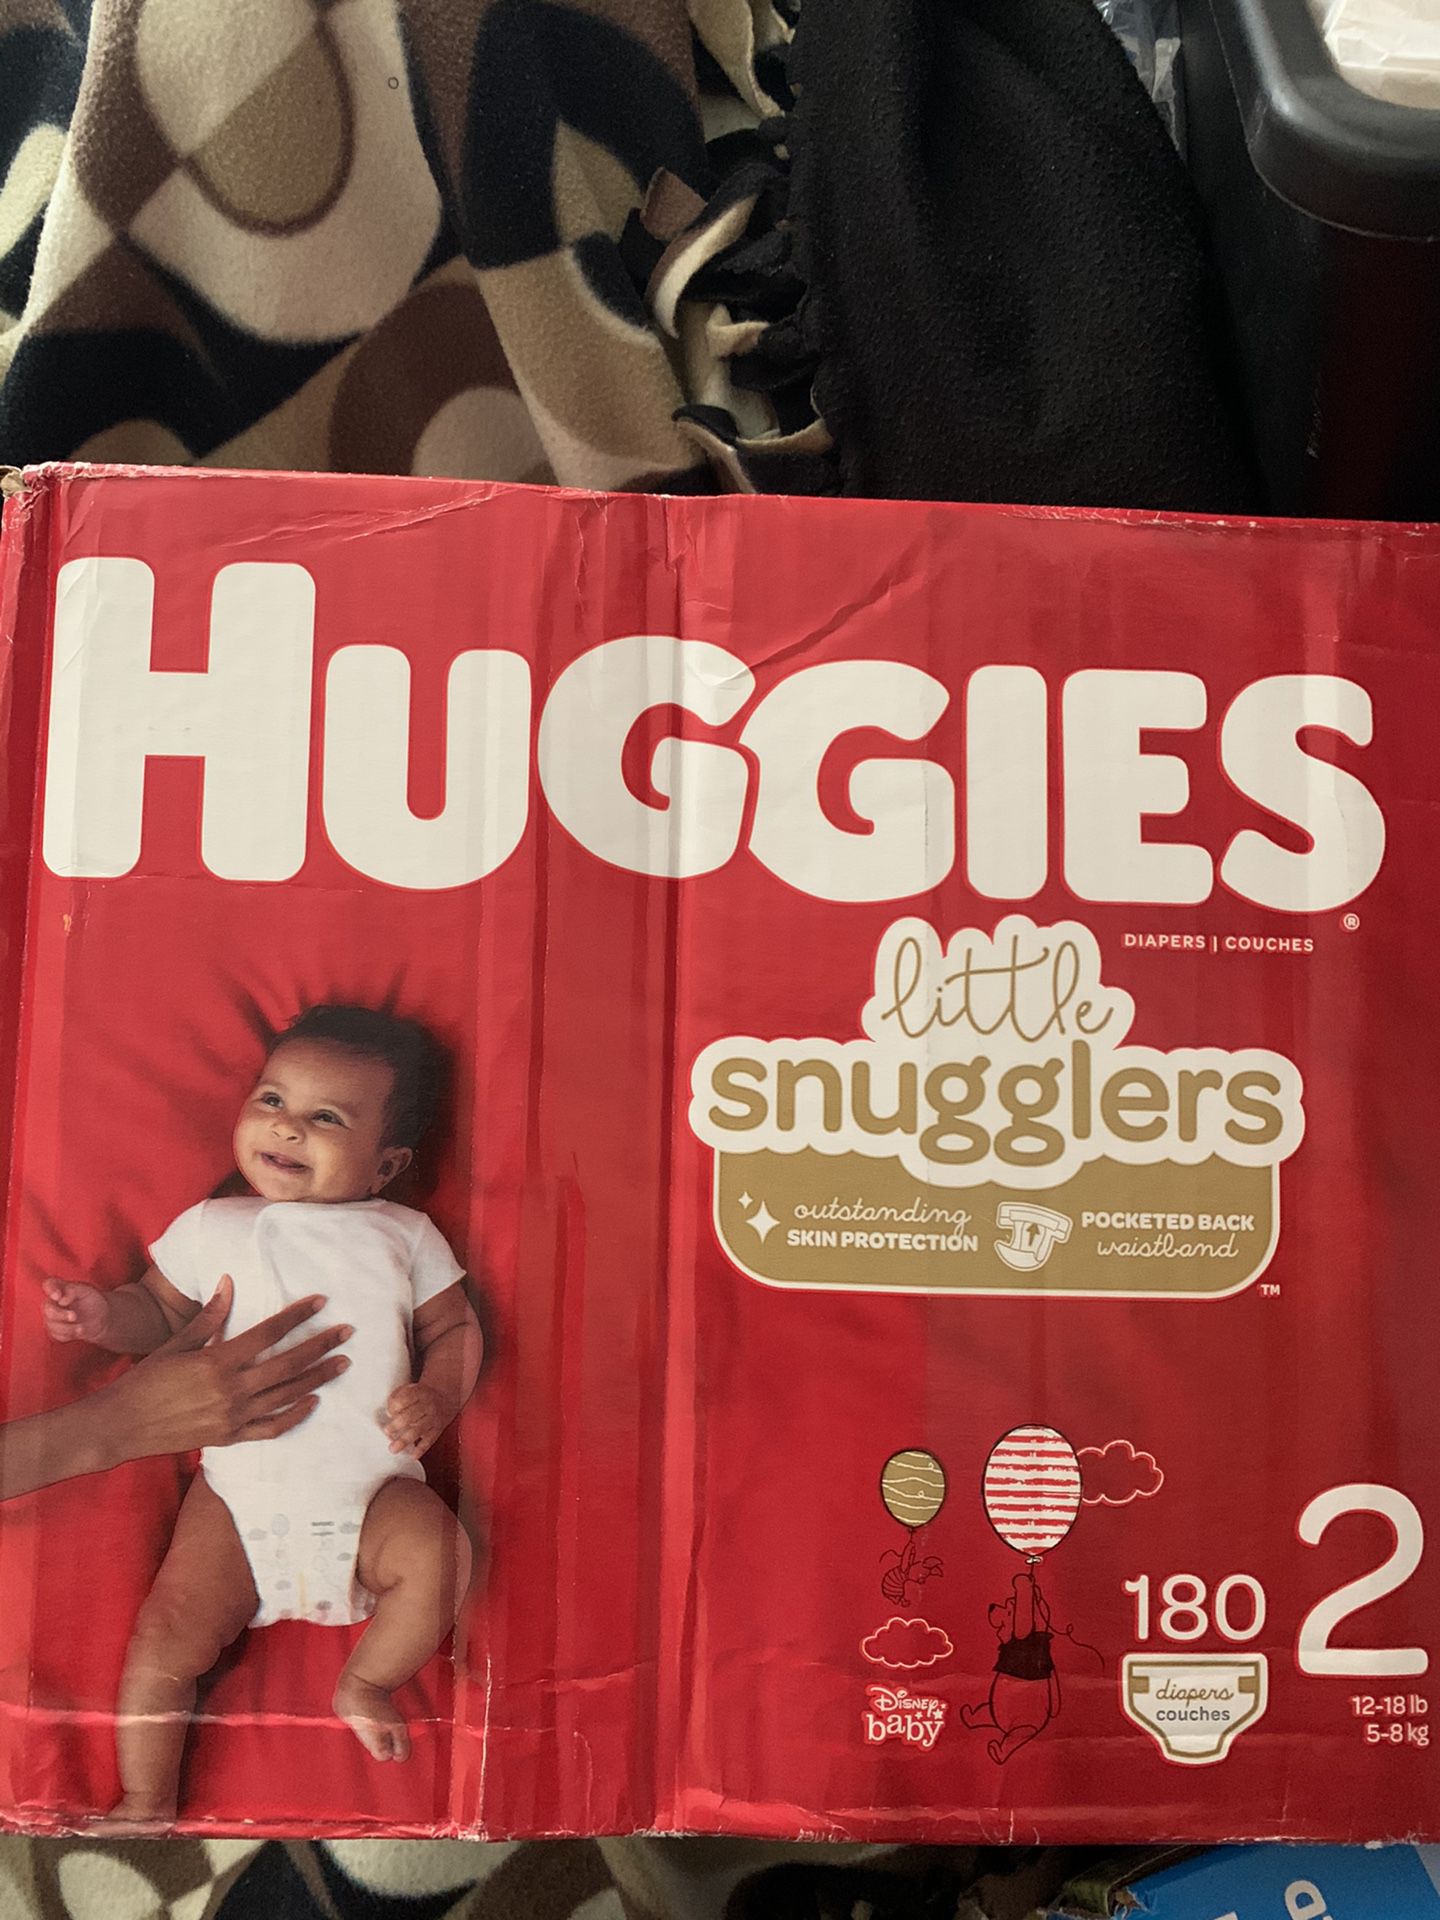 Huggies little sugglers diapers